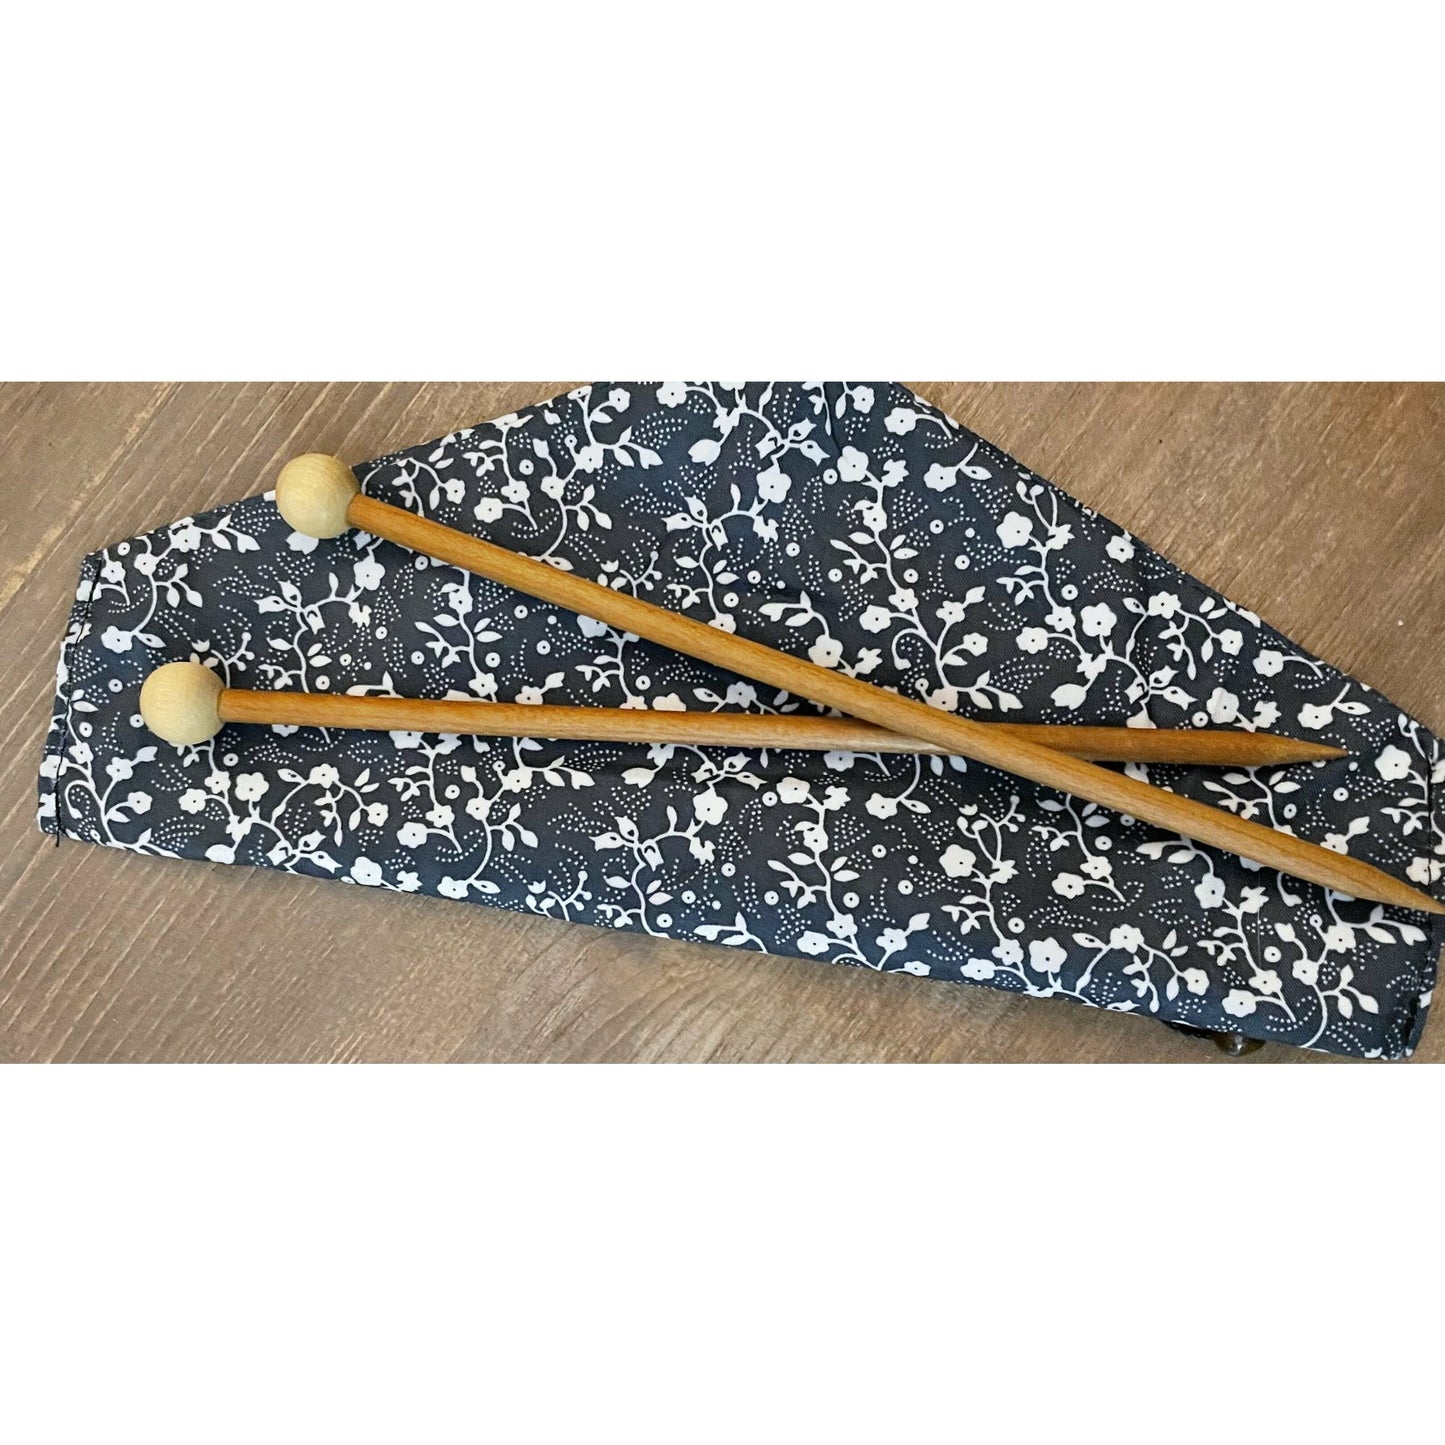 Cherry & Birch Wooden Knitting Needles | Knitting Needles for Beginners - Alder & Alouette